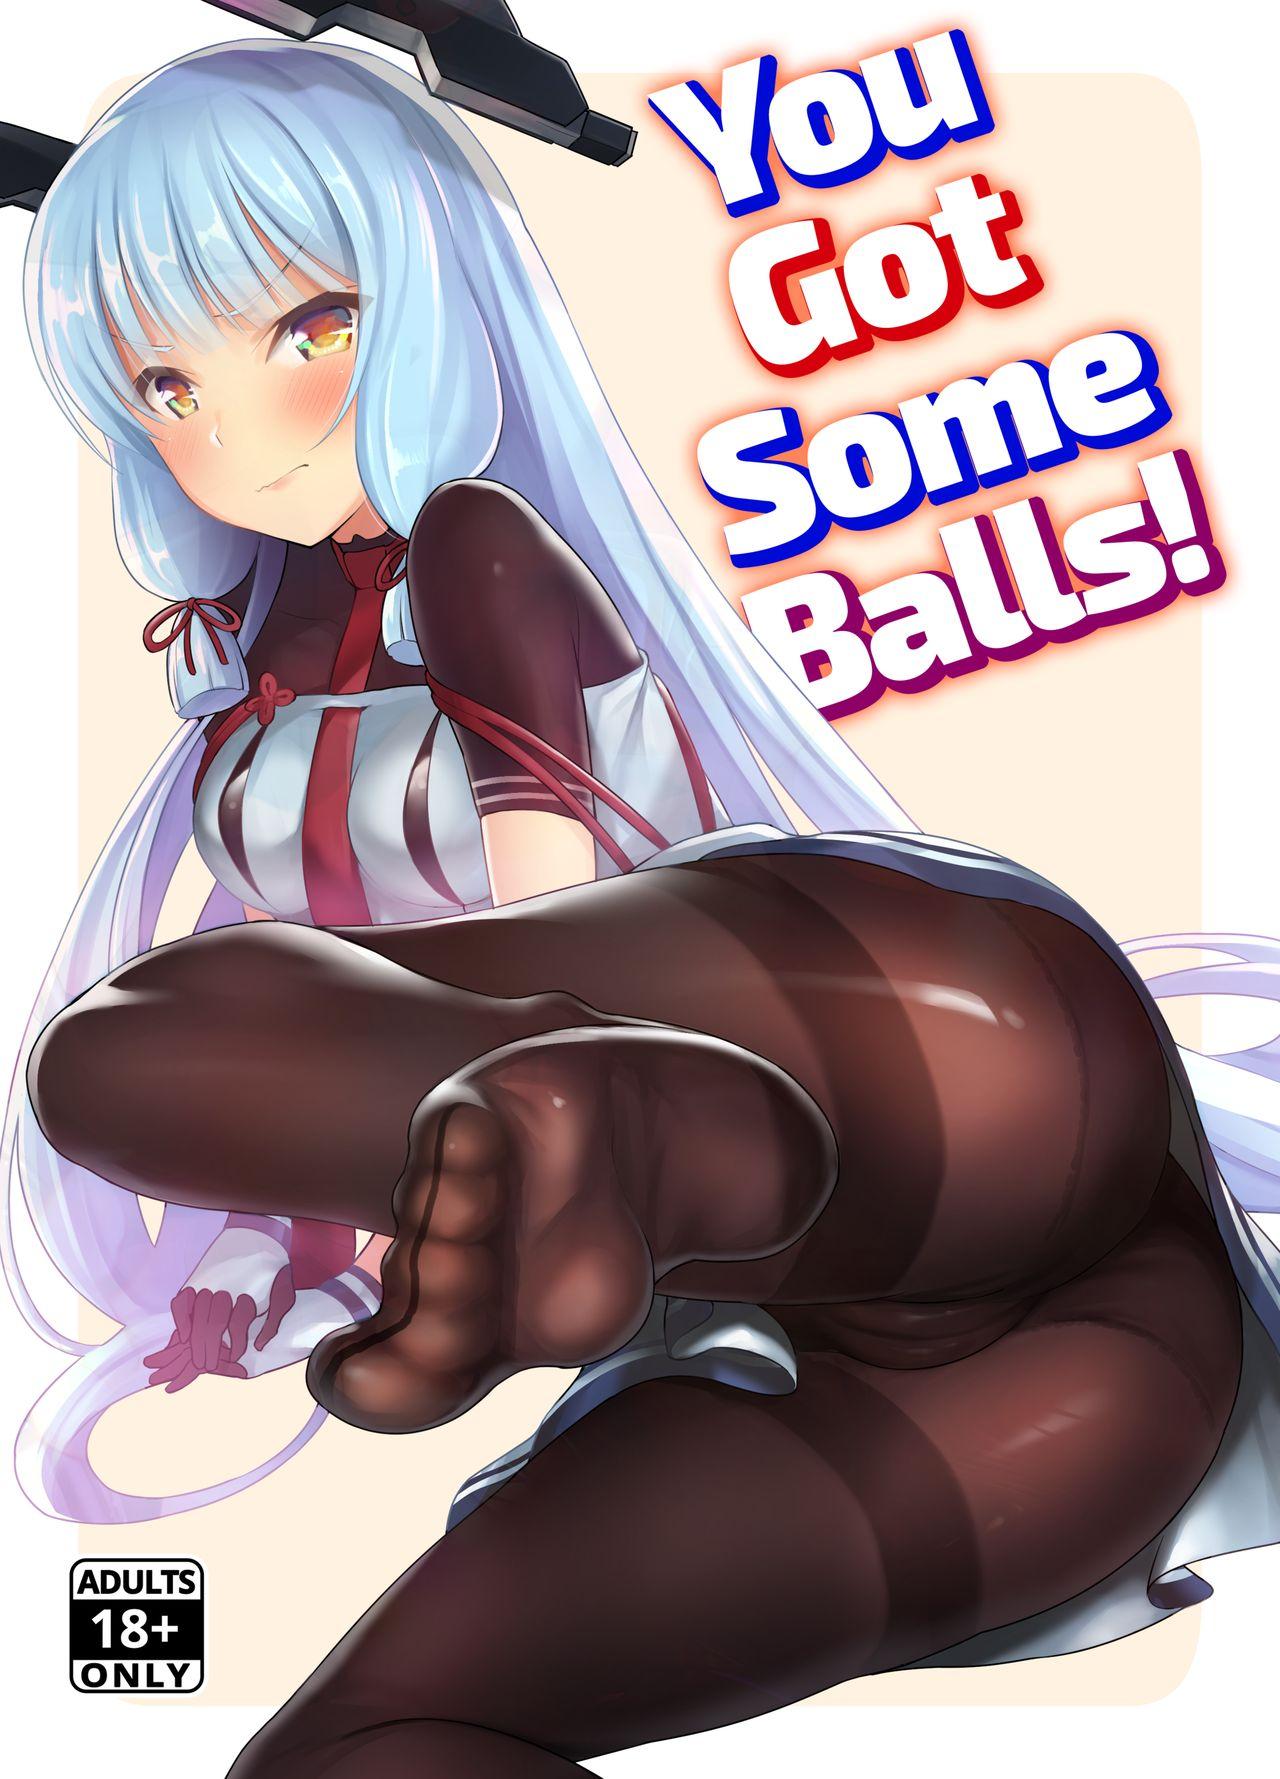 Kyosei Igai Arienai | You Got Some Balls! 0